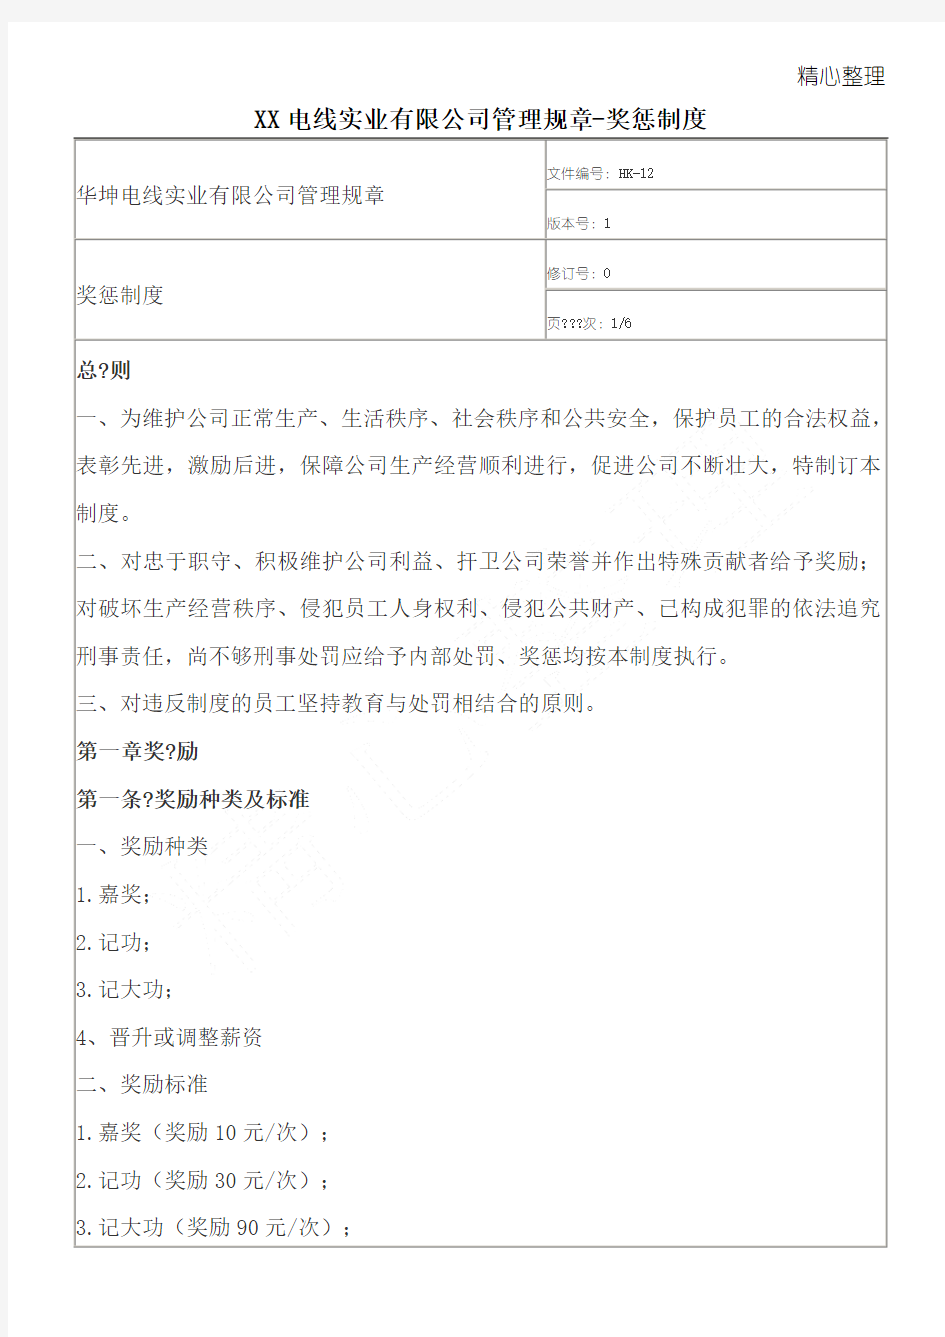 XX电线实业有限公司管理规章-奖惩制度守则(doc9)(1)